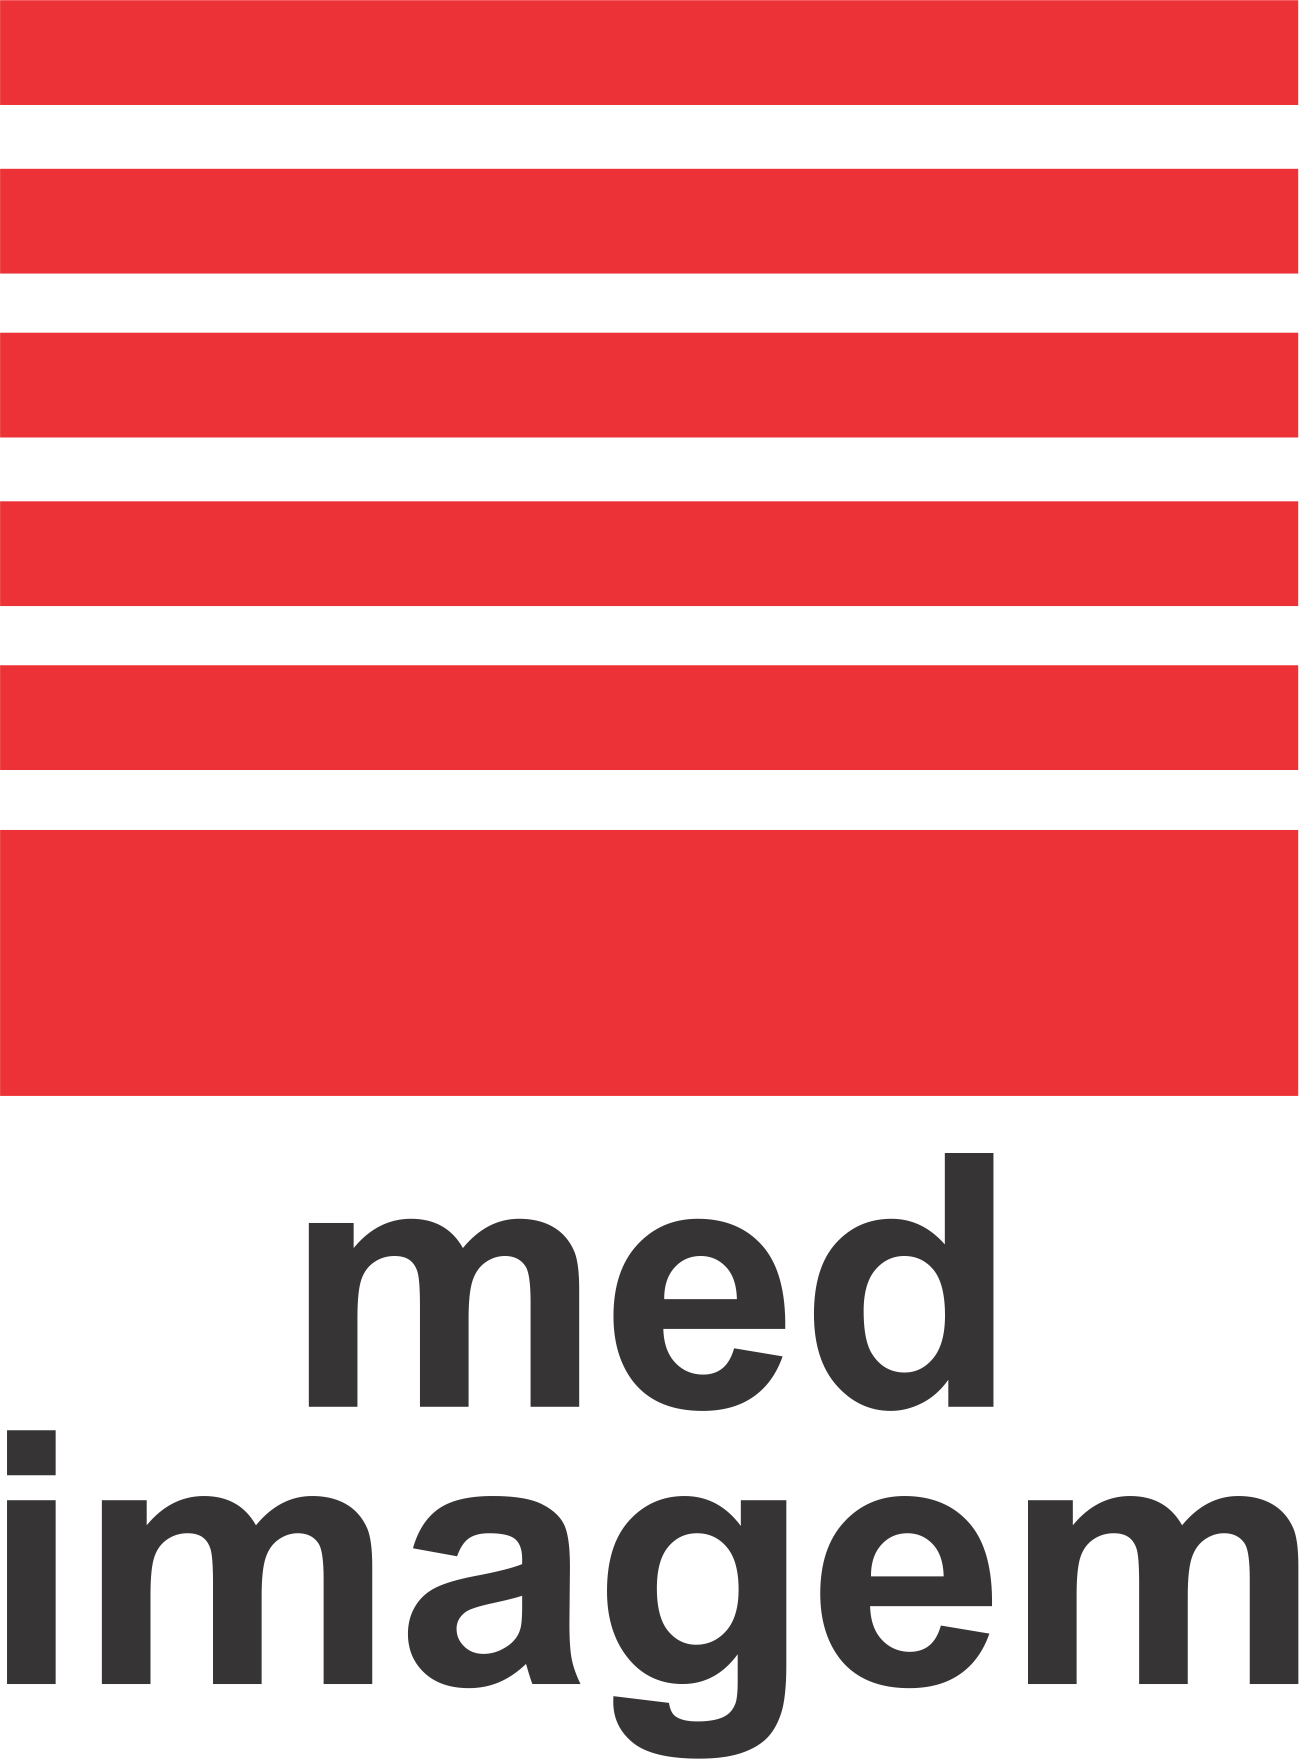 Logo do hospital